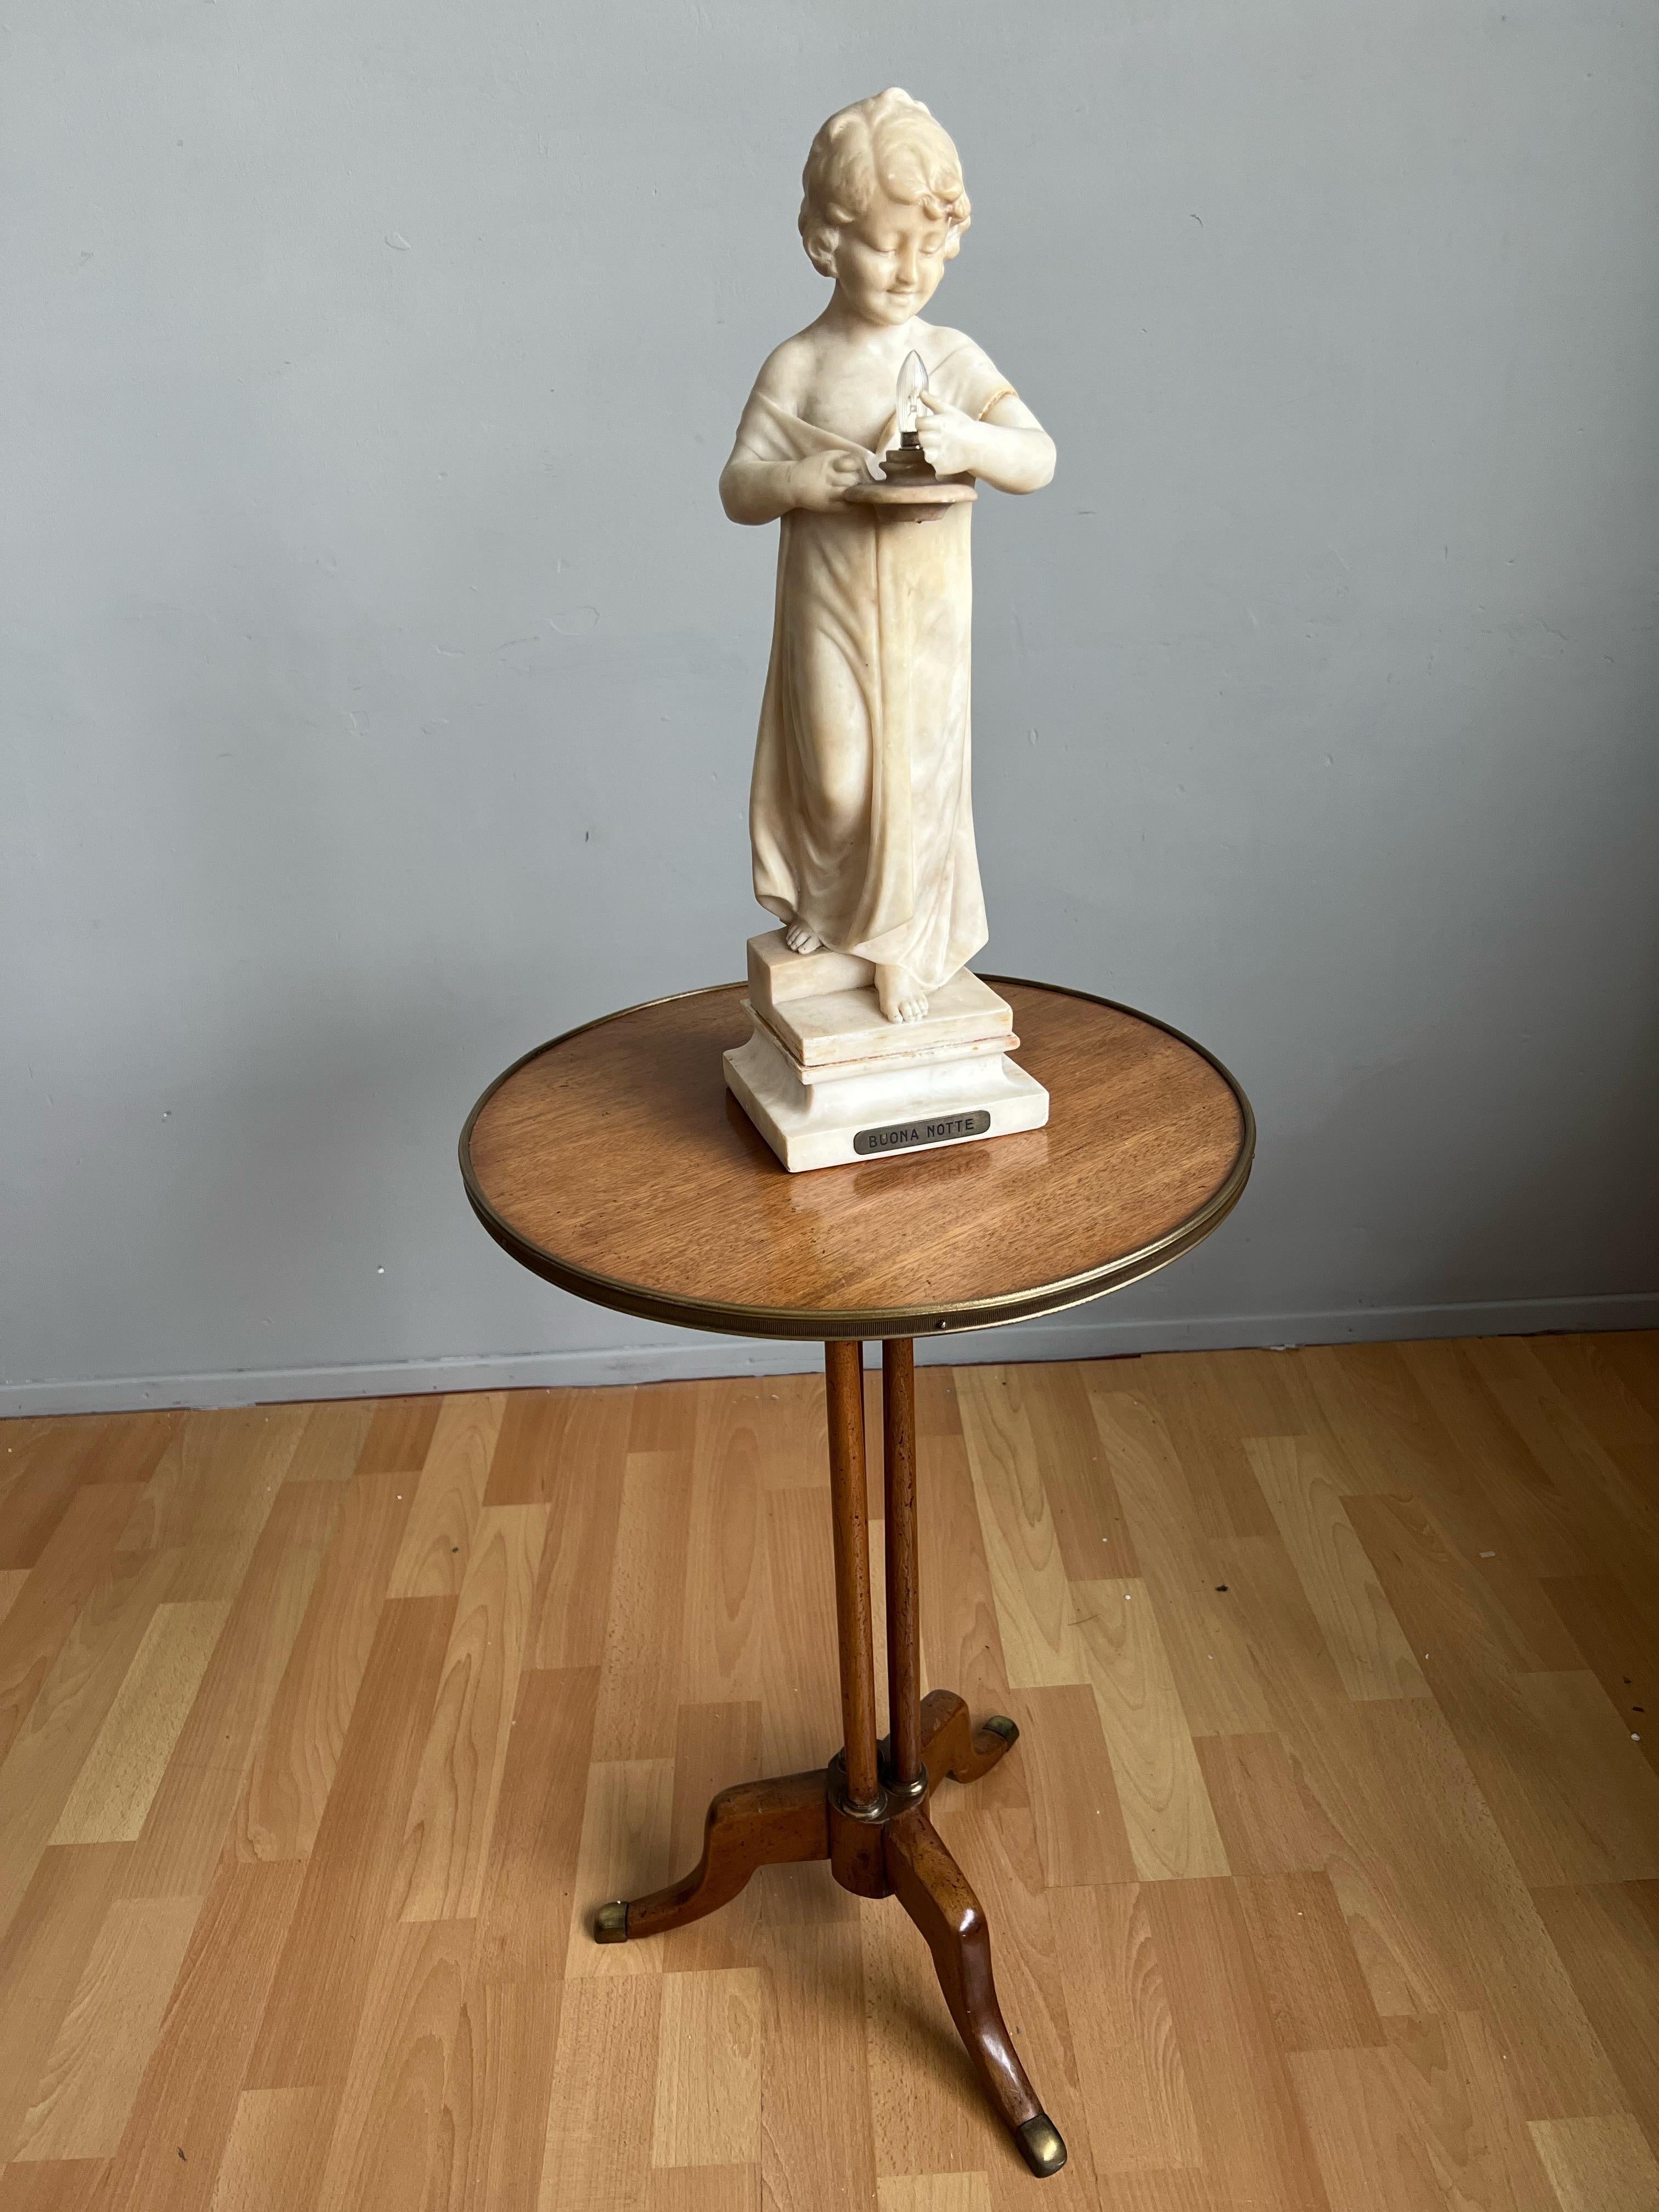 Ravissante sculpture ancienne d'une jeune fille dans l'escalier tenant une lampe, par Umberto Stiaccini, Florence vers 1910.

Cette magnifique lampe de table ou de bureau sculpturale, vraiment élégante, est une autre de nos grandes trouvailles